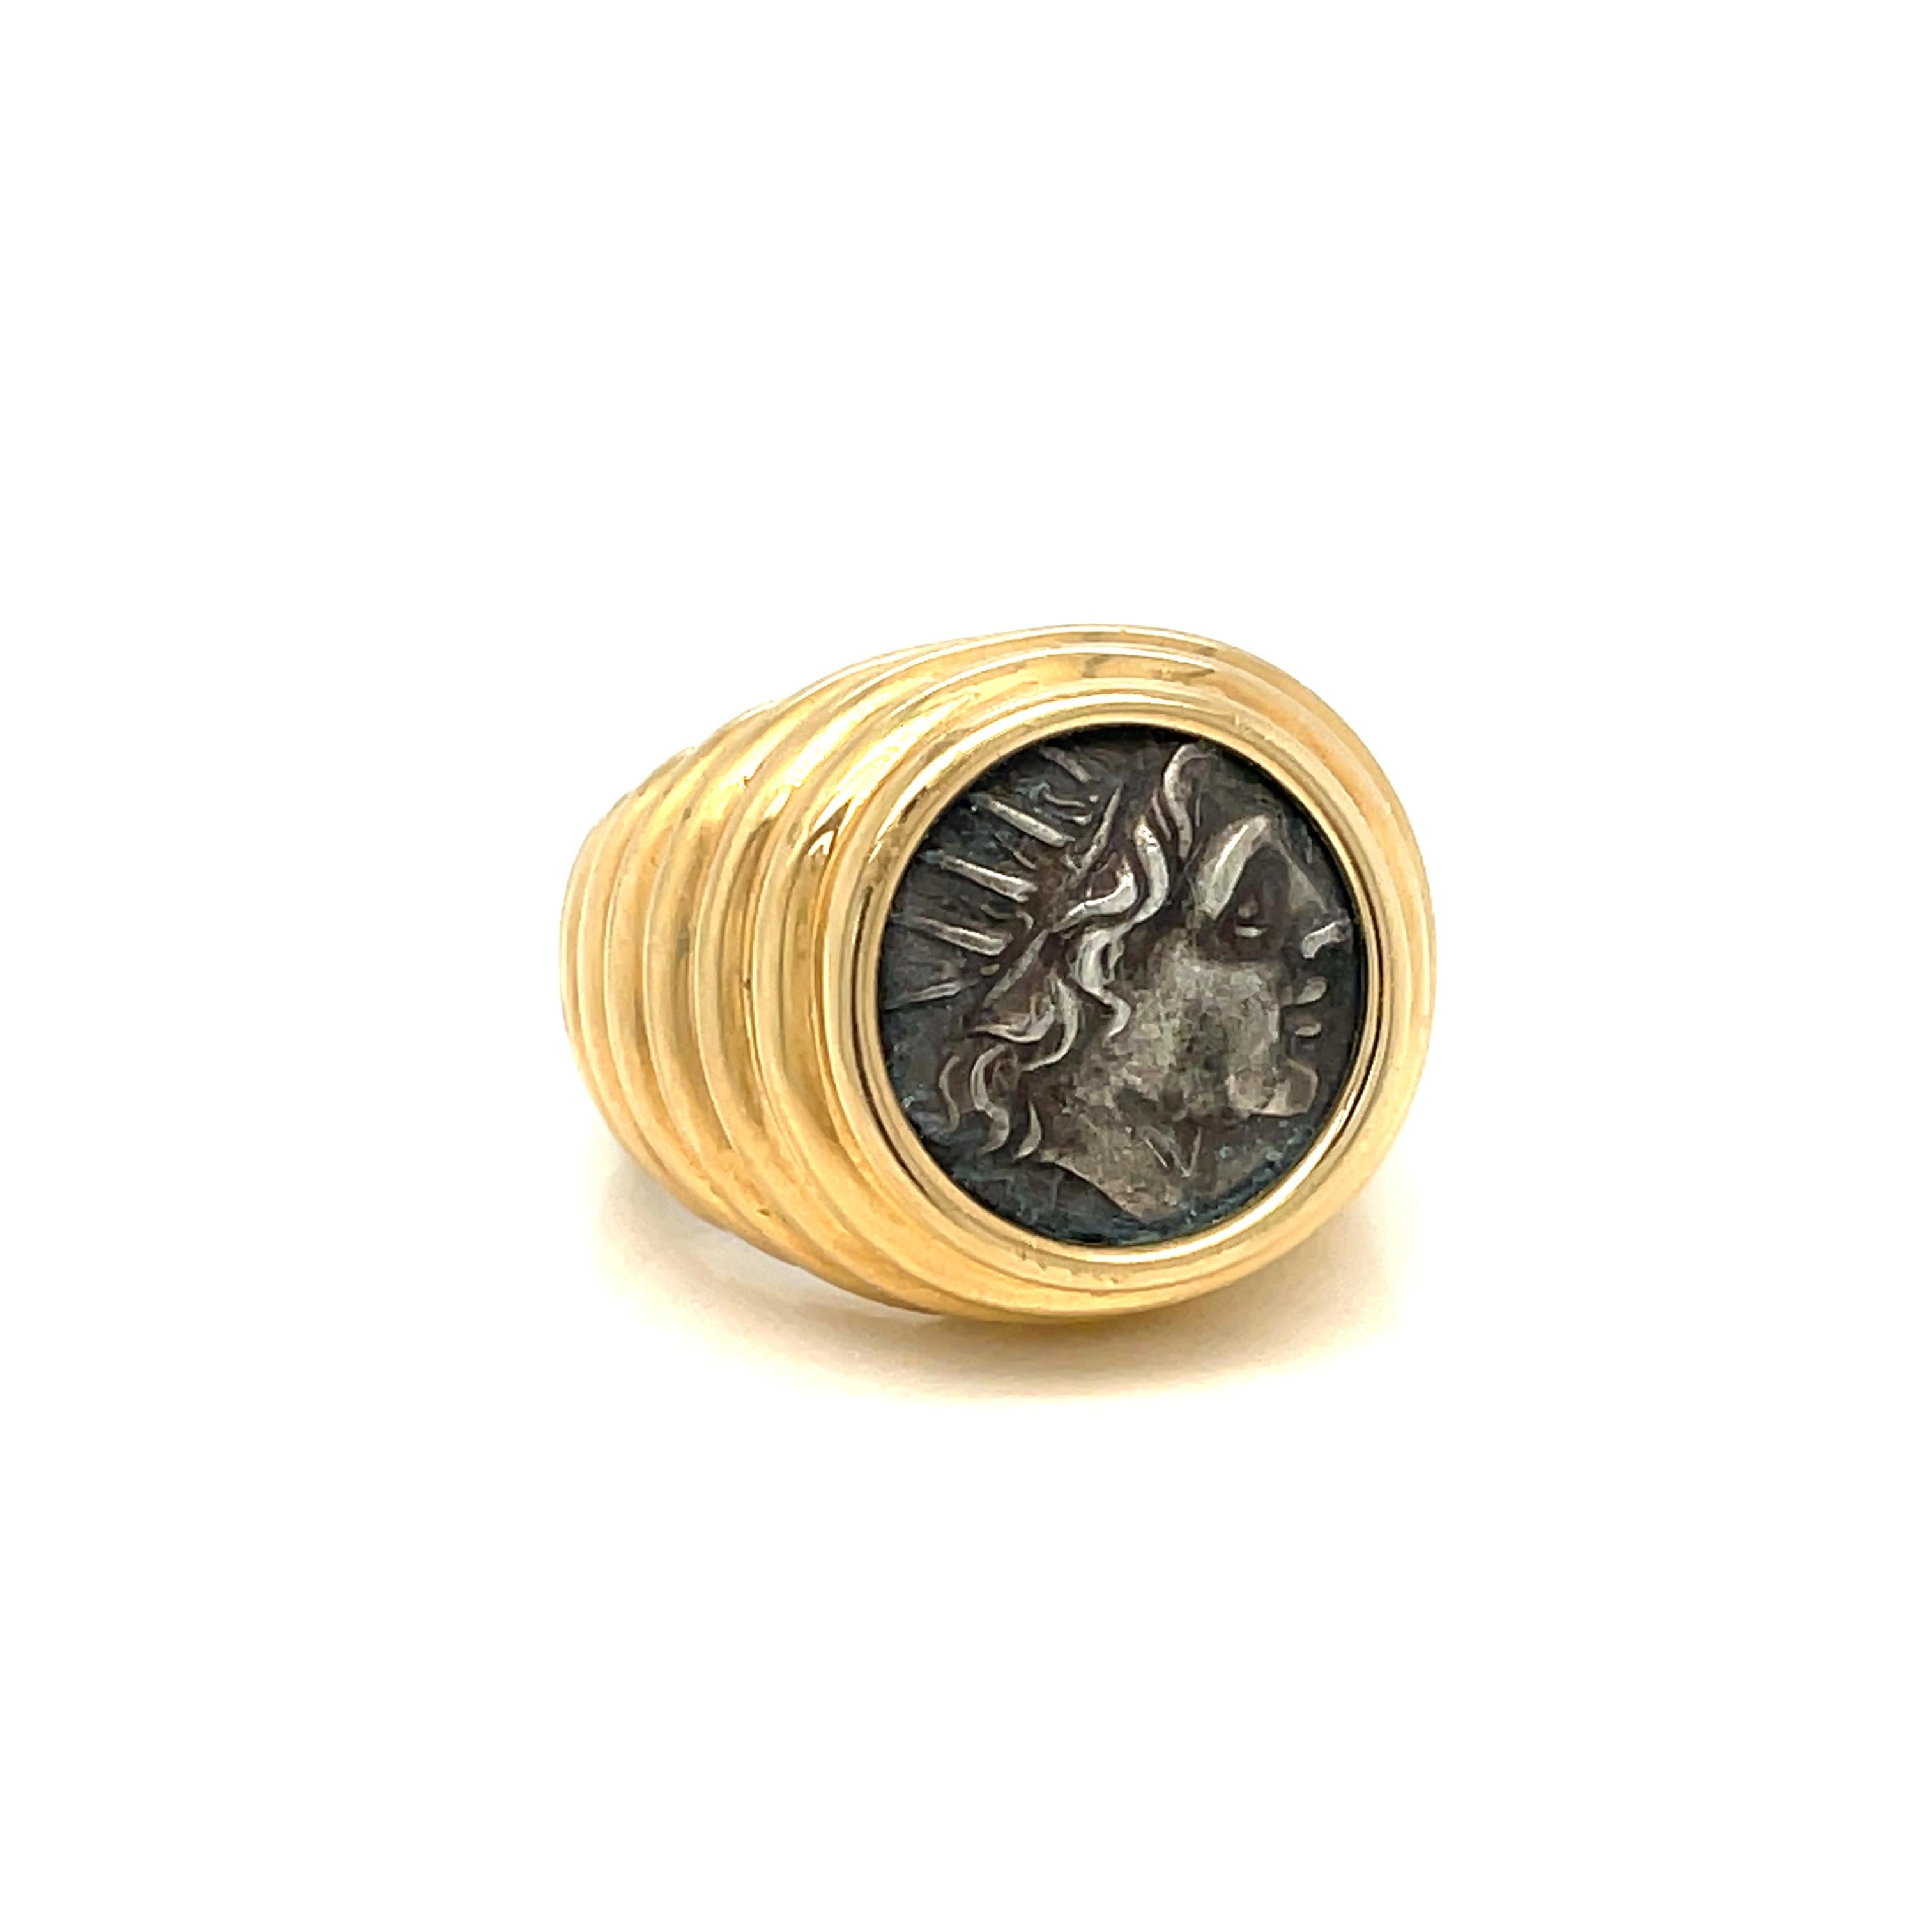 Bulgari Ring aus 18 Karat Gold aus der Kollektion Monet, mit einer Silbermünze aus dem antiken Rhodos, Griechenland. Der Ring Monet zeigt den Frauen, wie verführerisch eine 2.000 Jahre alte Münze in Kombination mit einer kühnen, modernen Fassung